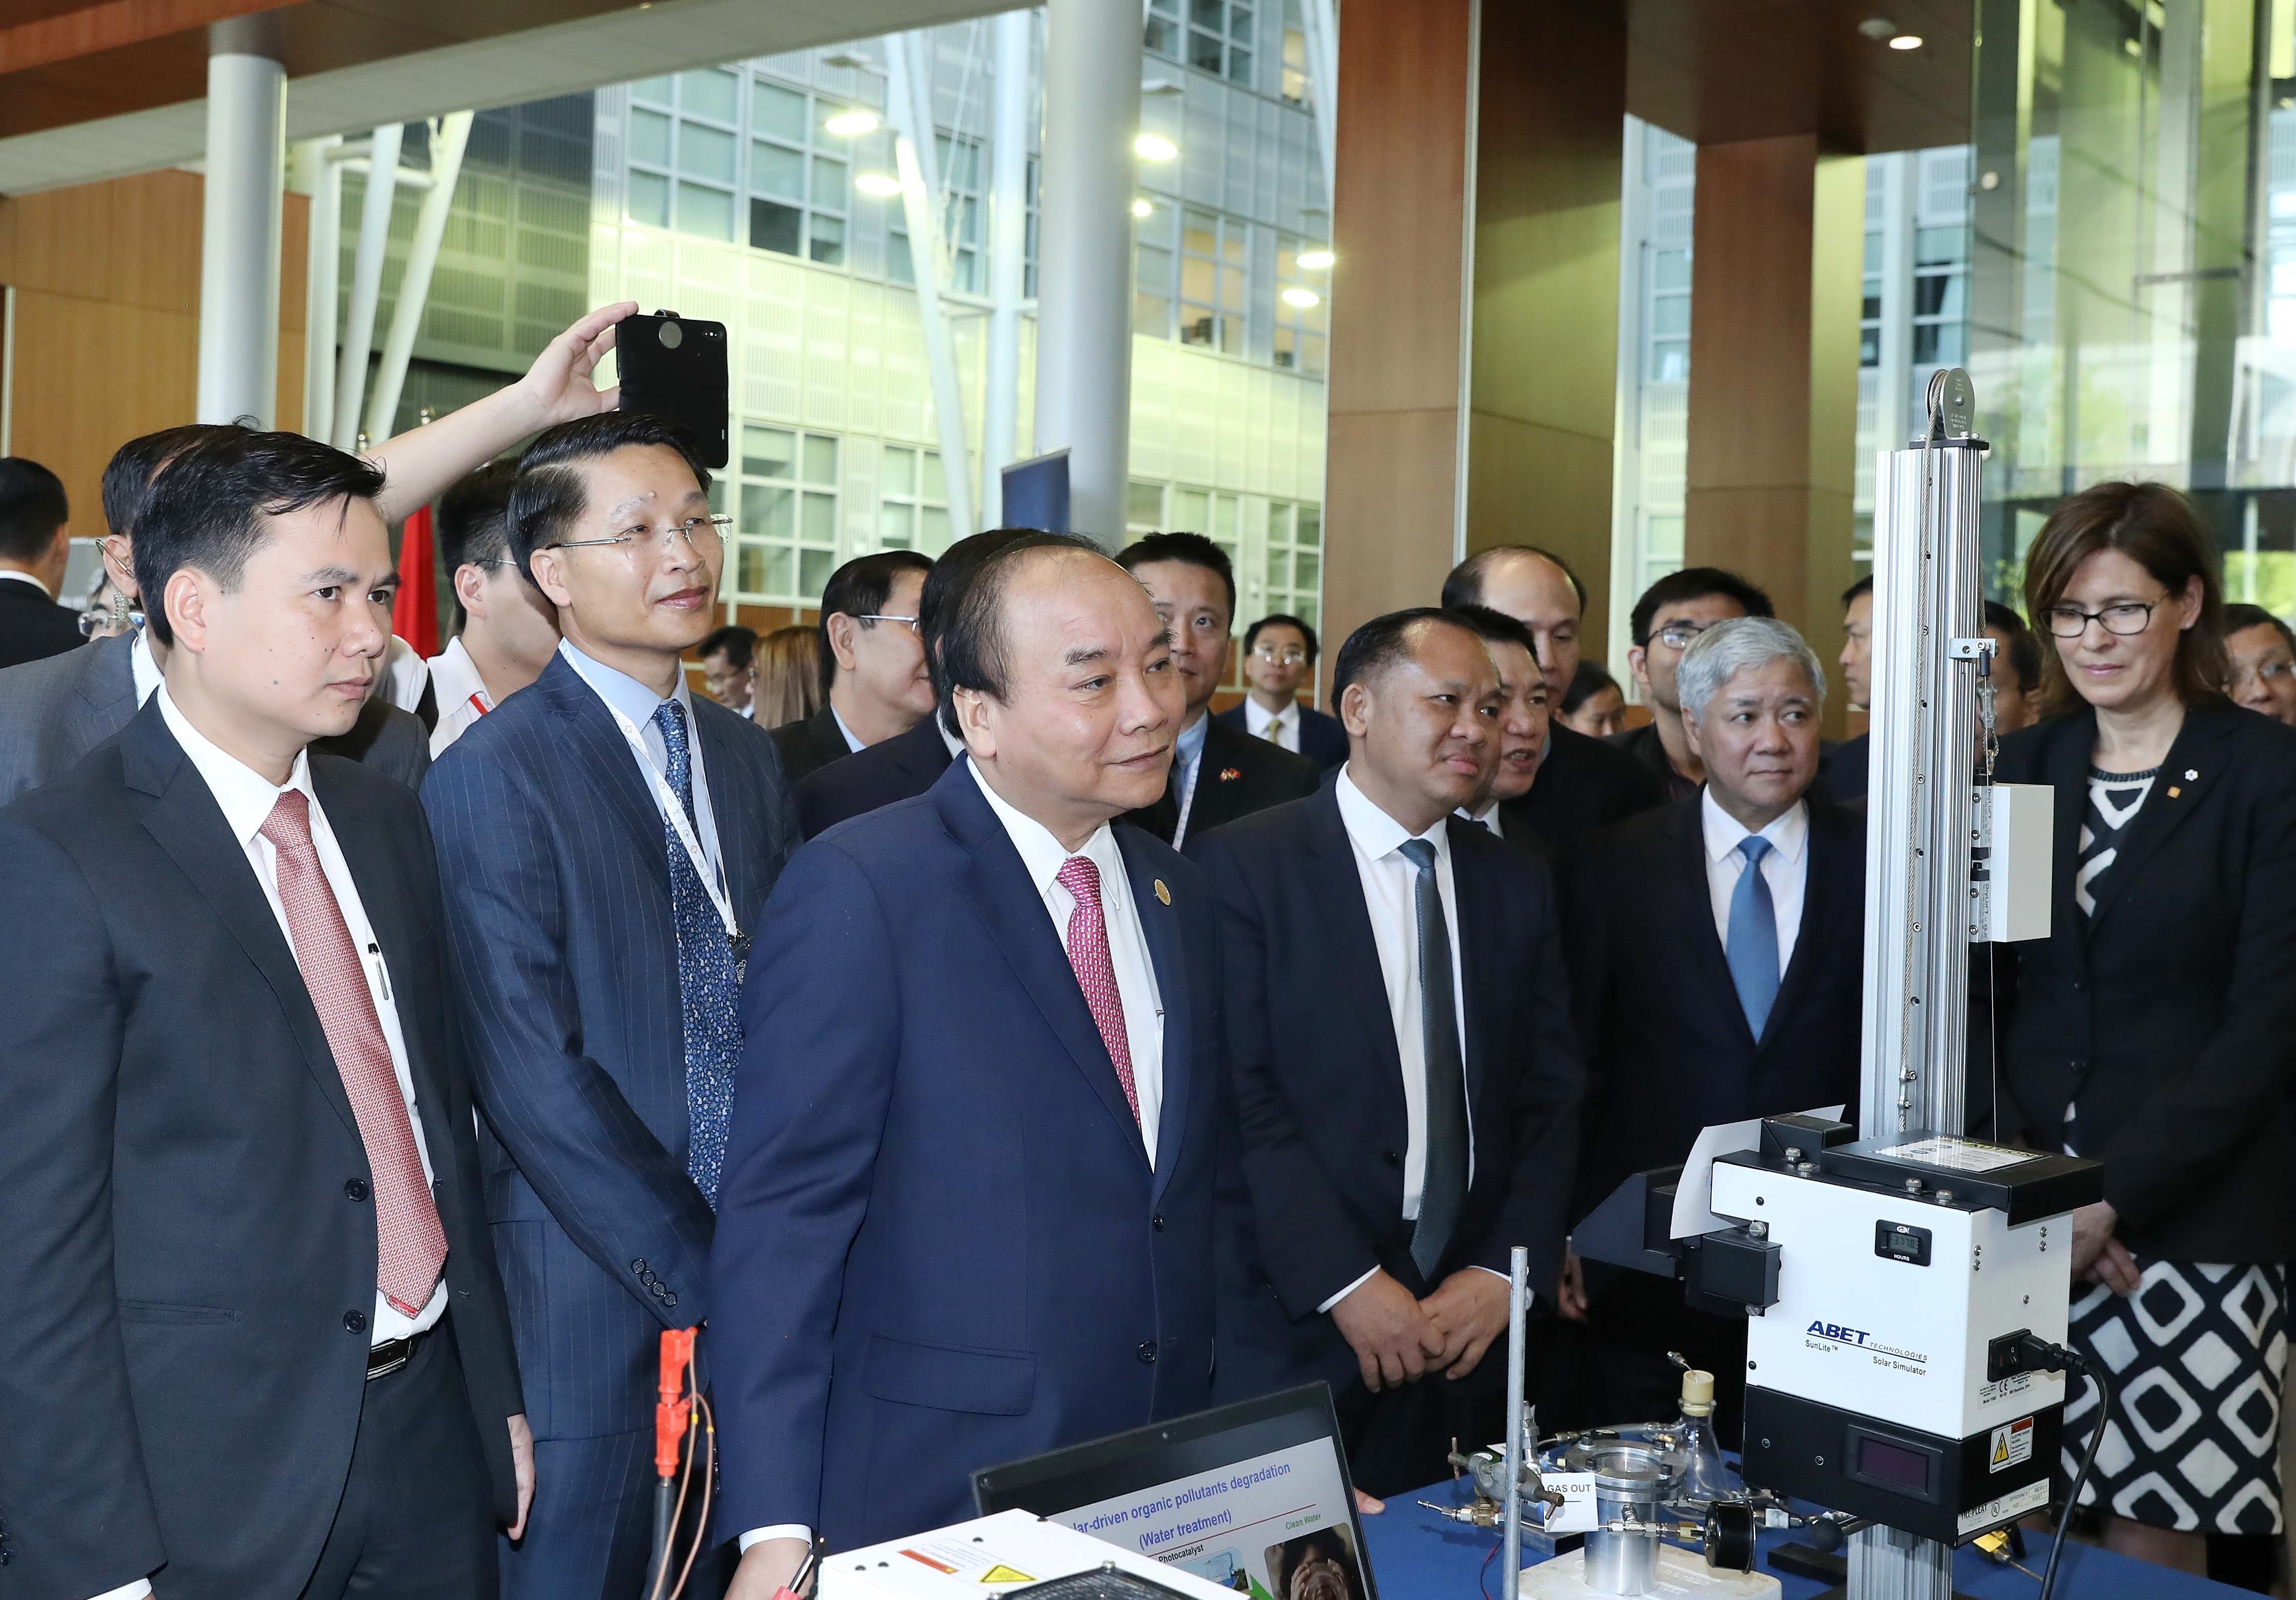 越南政府总理阮春福一行出席题为‘未来的智能技术‘的智能技术展示活动。越通社记者 统一 摄